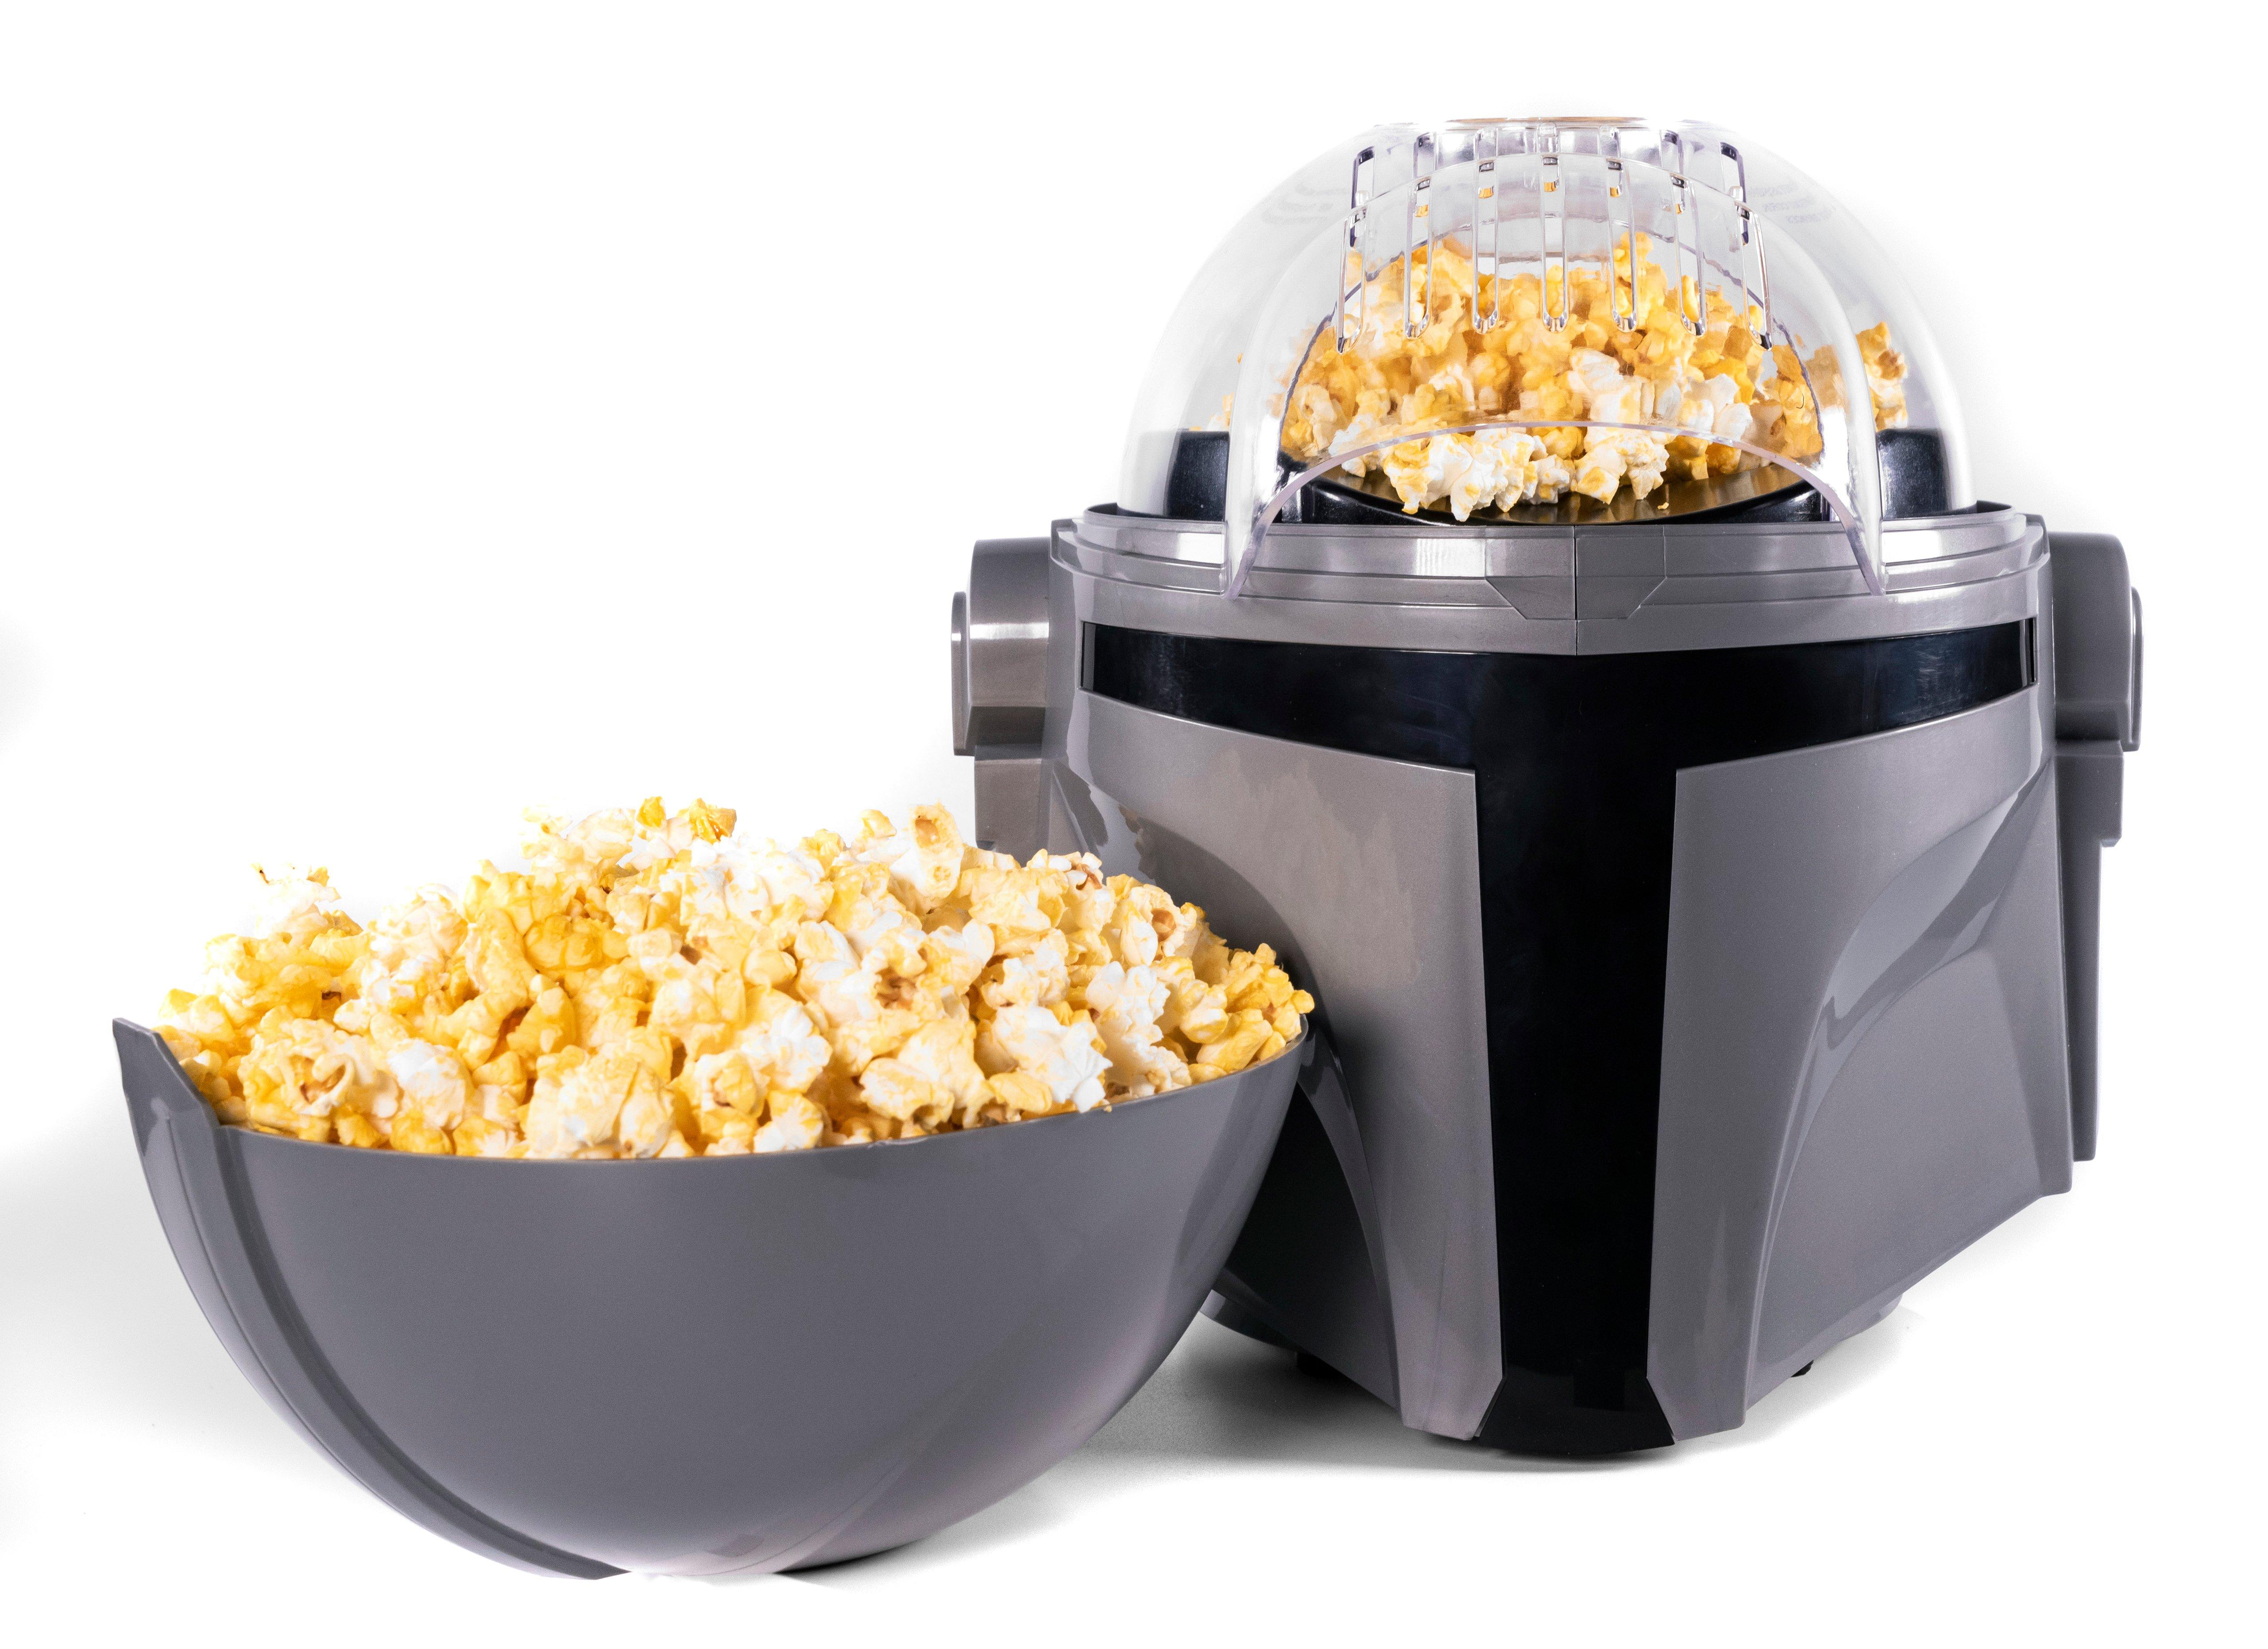 Mandalorian Popcorn Maker